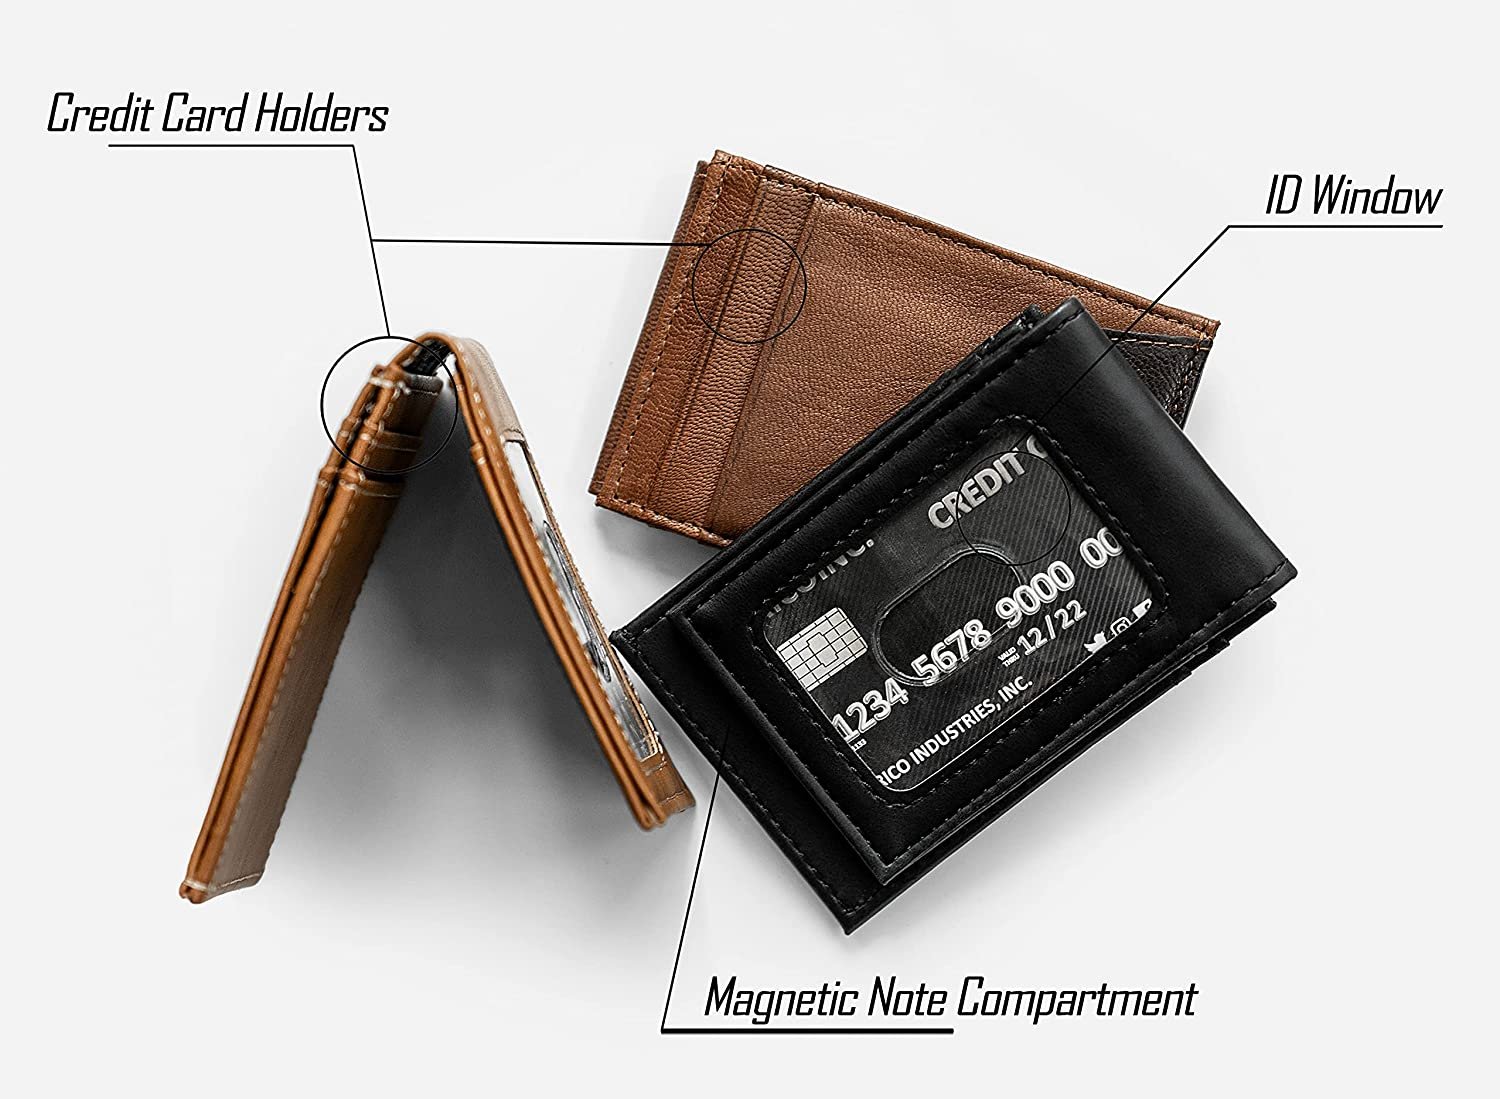 Winnipeg Jets Premium Brown Leather Wallet, Front Pocket Magnetic Money Clip, Laser Engraved, Vegan